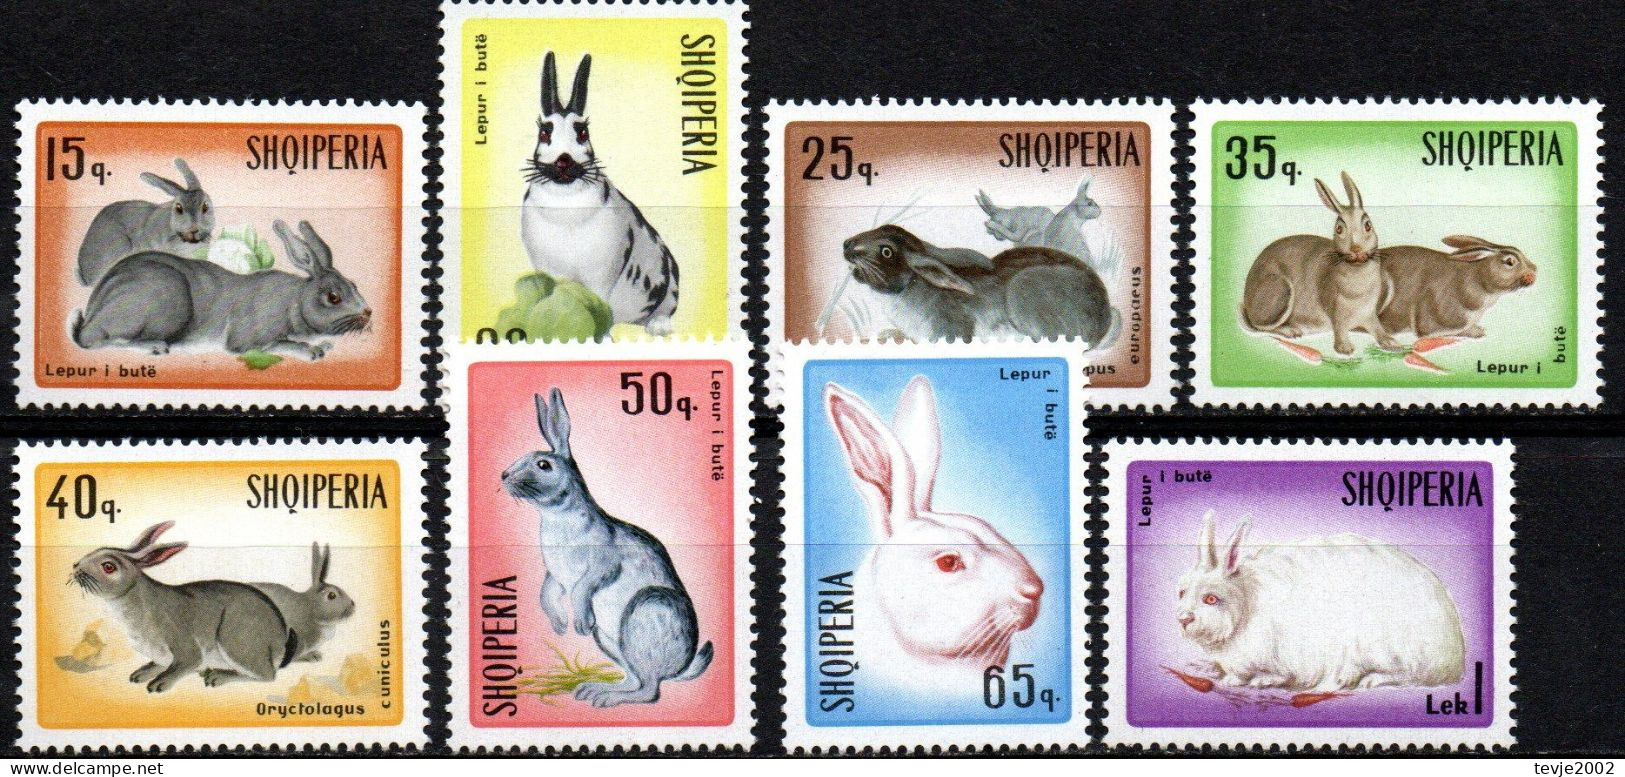 Albanien 1967 - Mi.Nr. 1193 - 1200 - Postfrisch MNH - Tiere Animals Hasen Kaninchen Rabbits - Rodents